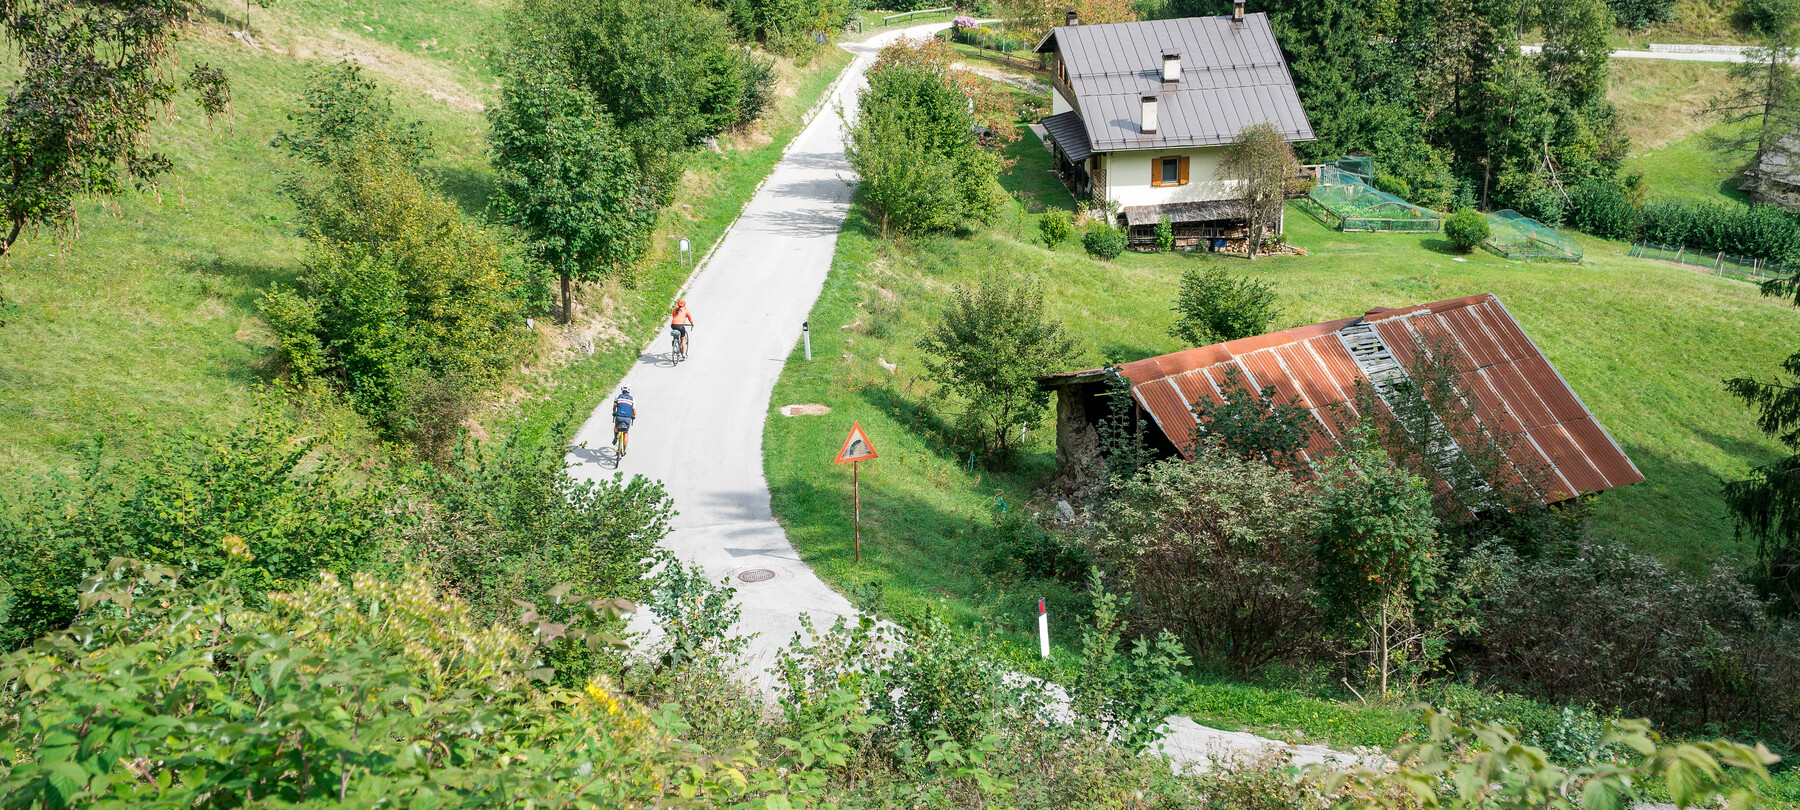 La ciclo-via Do-Ga: in bici dalle Dolomiti al lago di Garda